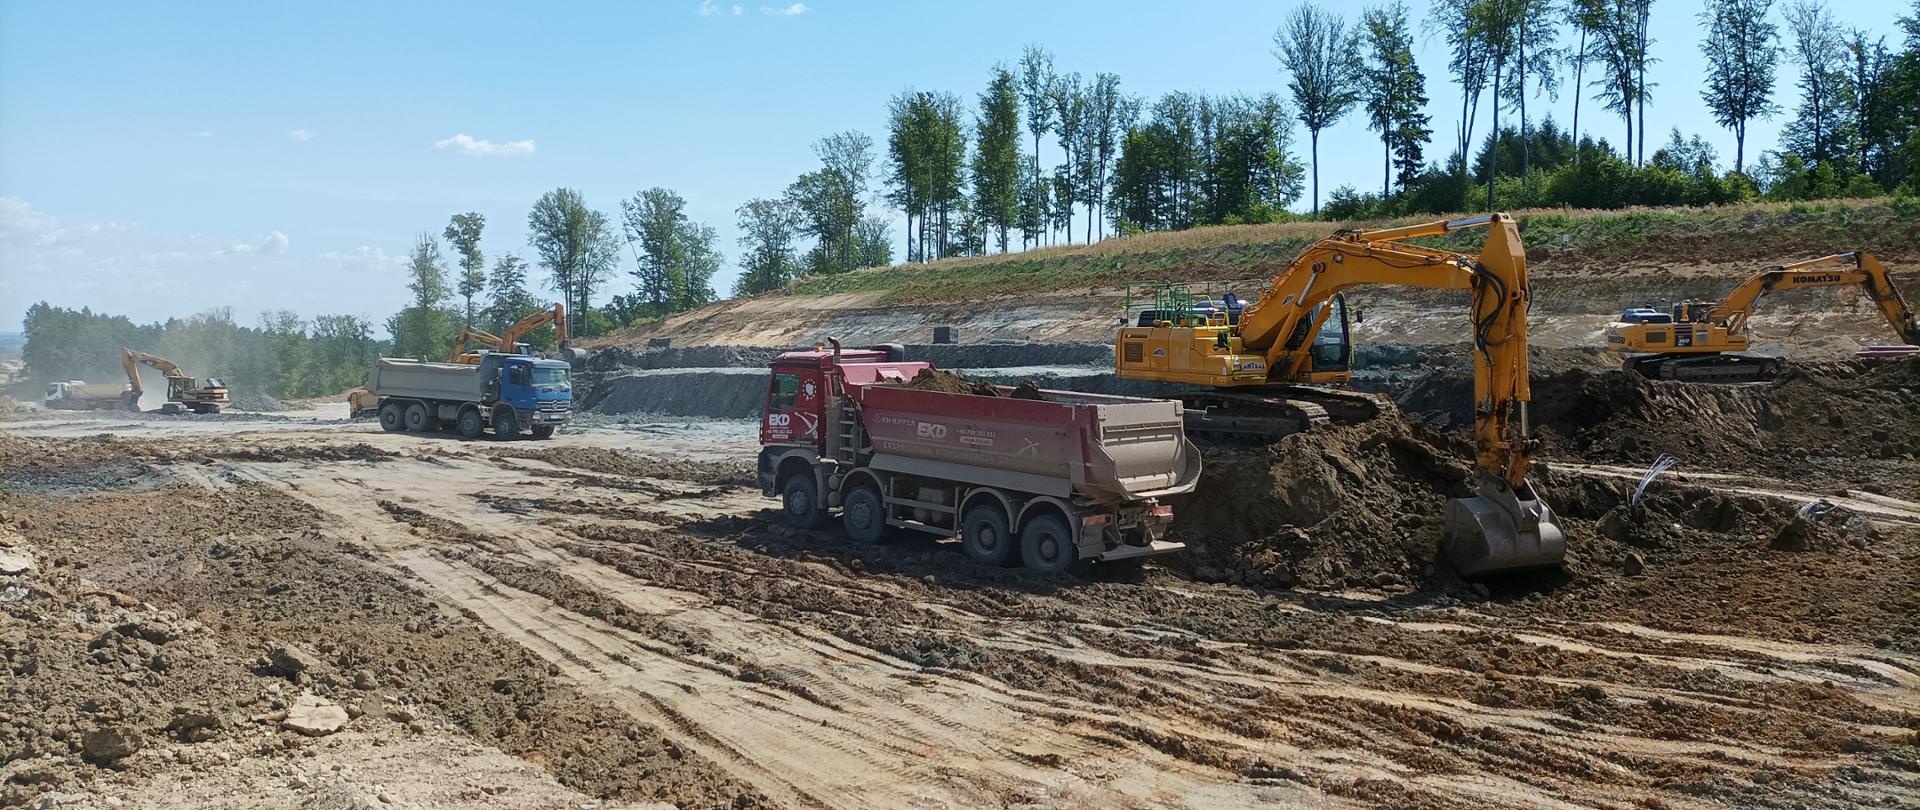 Budowa S19 Rzeszów Południe - Babica_prace ziemne na portalu północnym tunelu